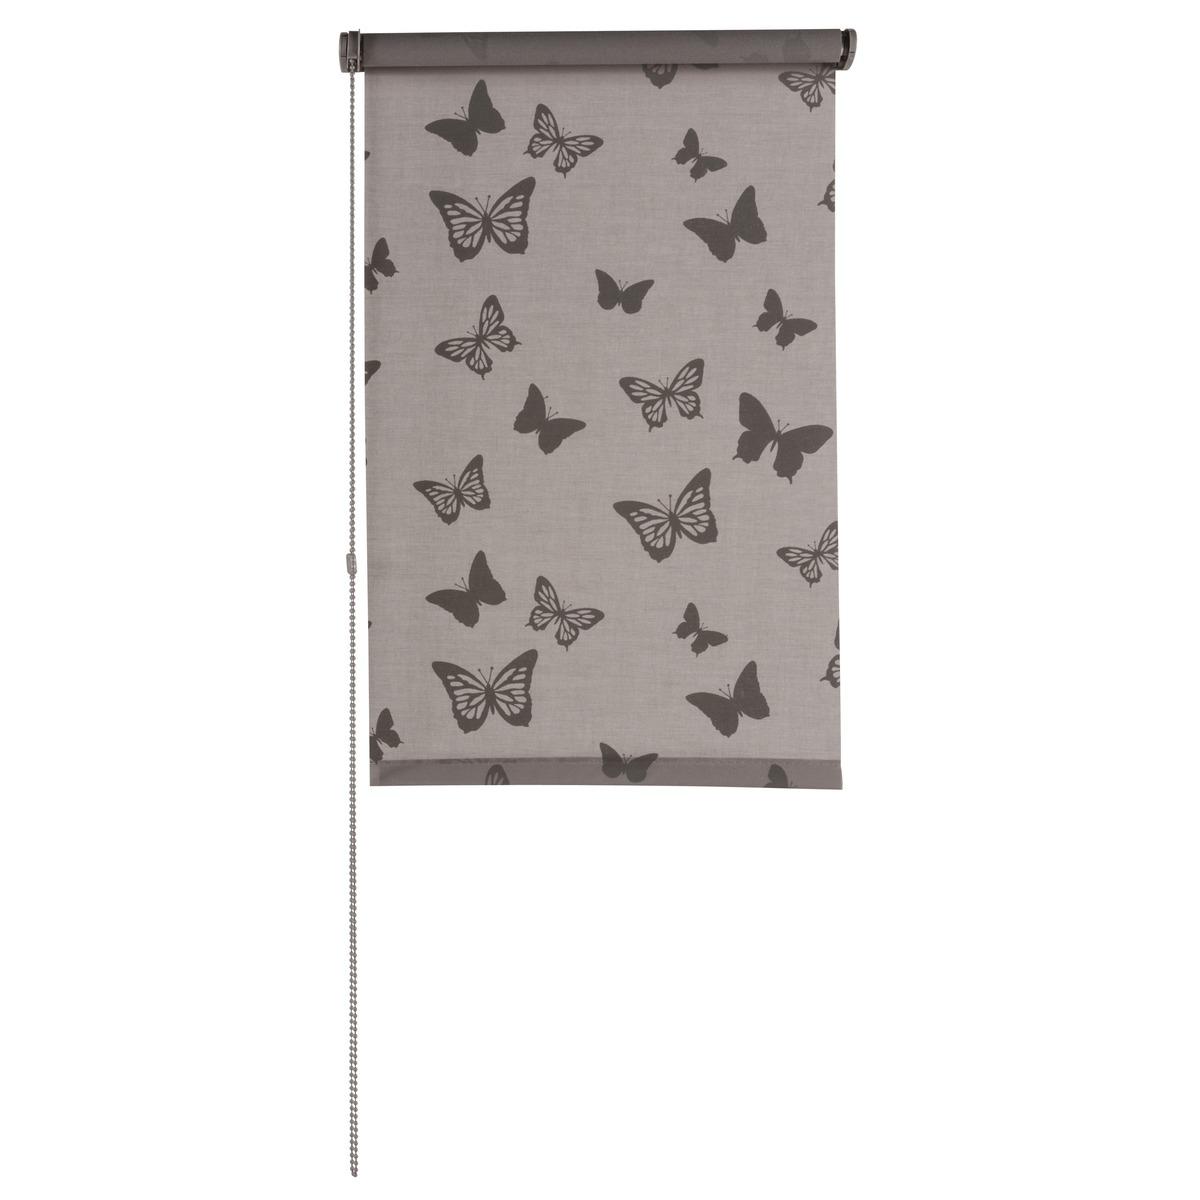 Store enrouleur tamisant imprimé papillon - 90 x 180 cm - Marron taupe